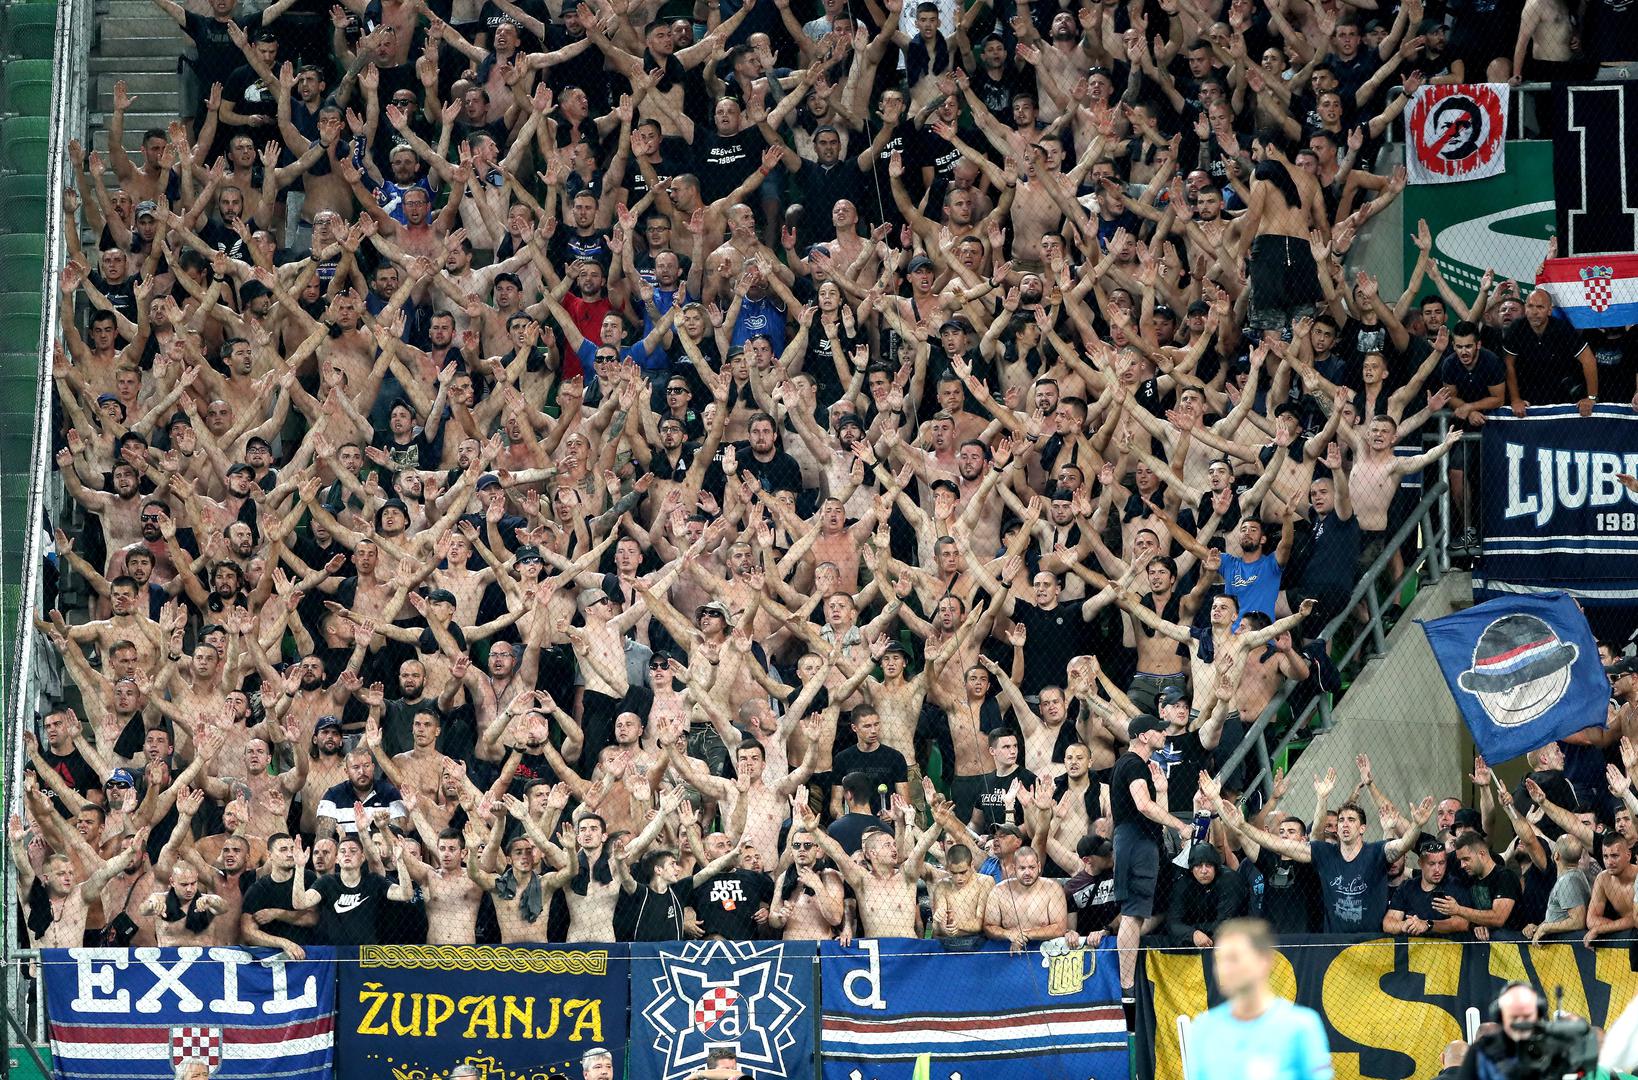 Nogometaši Dinama svojom su izvedbom protiv Ferencvarosa u Budimpešti uljepšali dan svim svojim navijačima